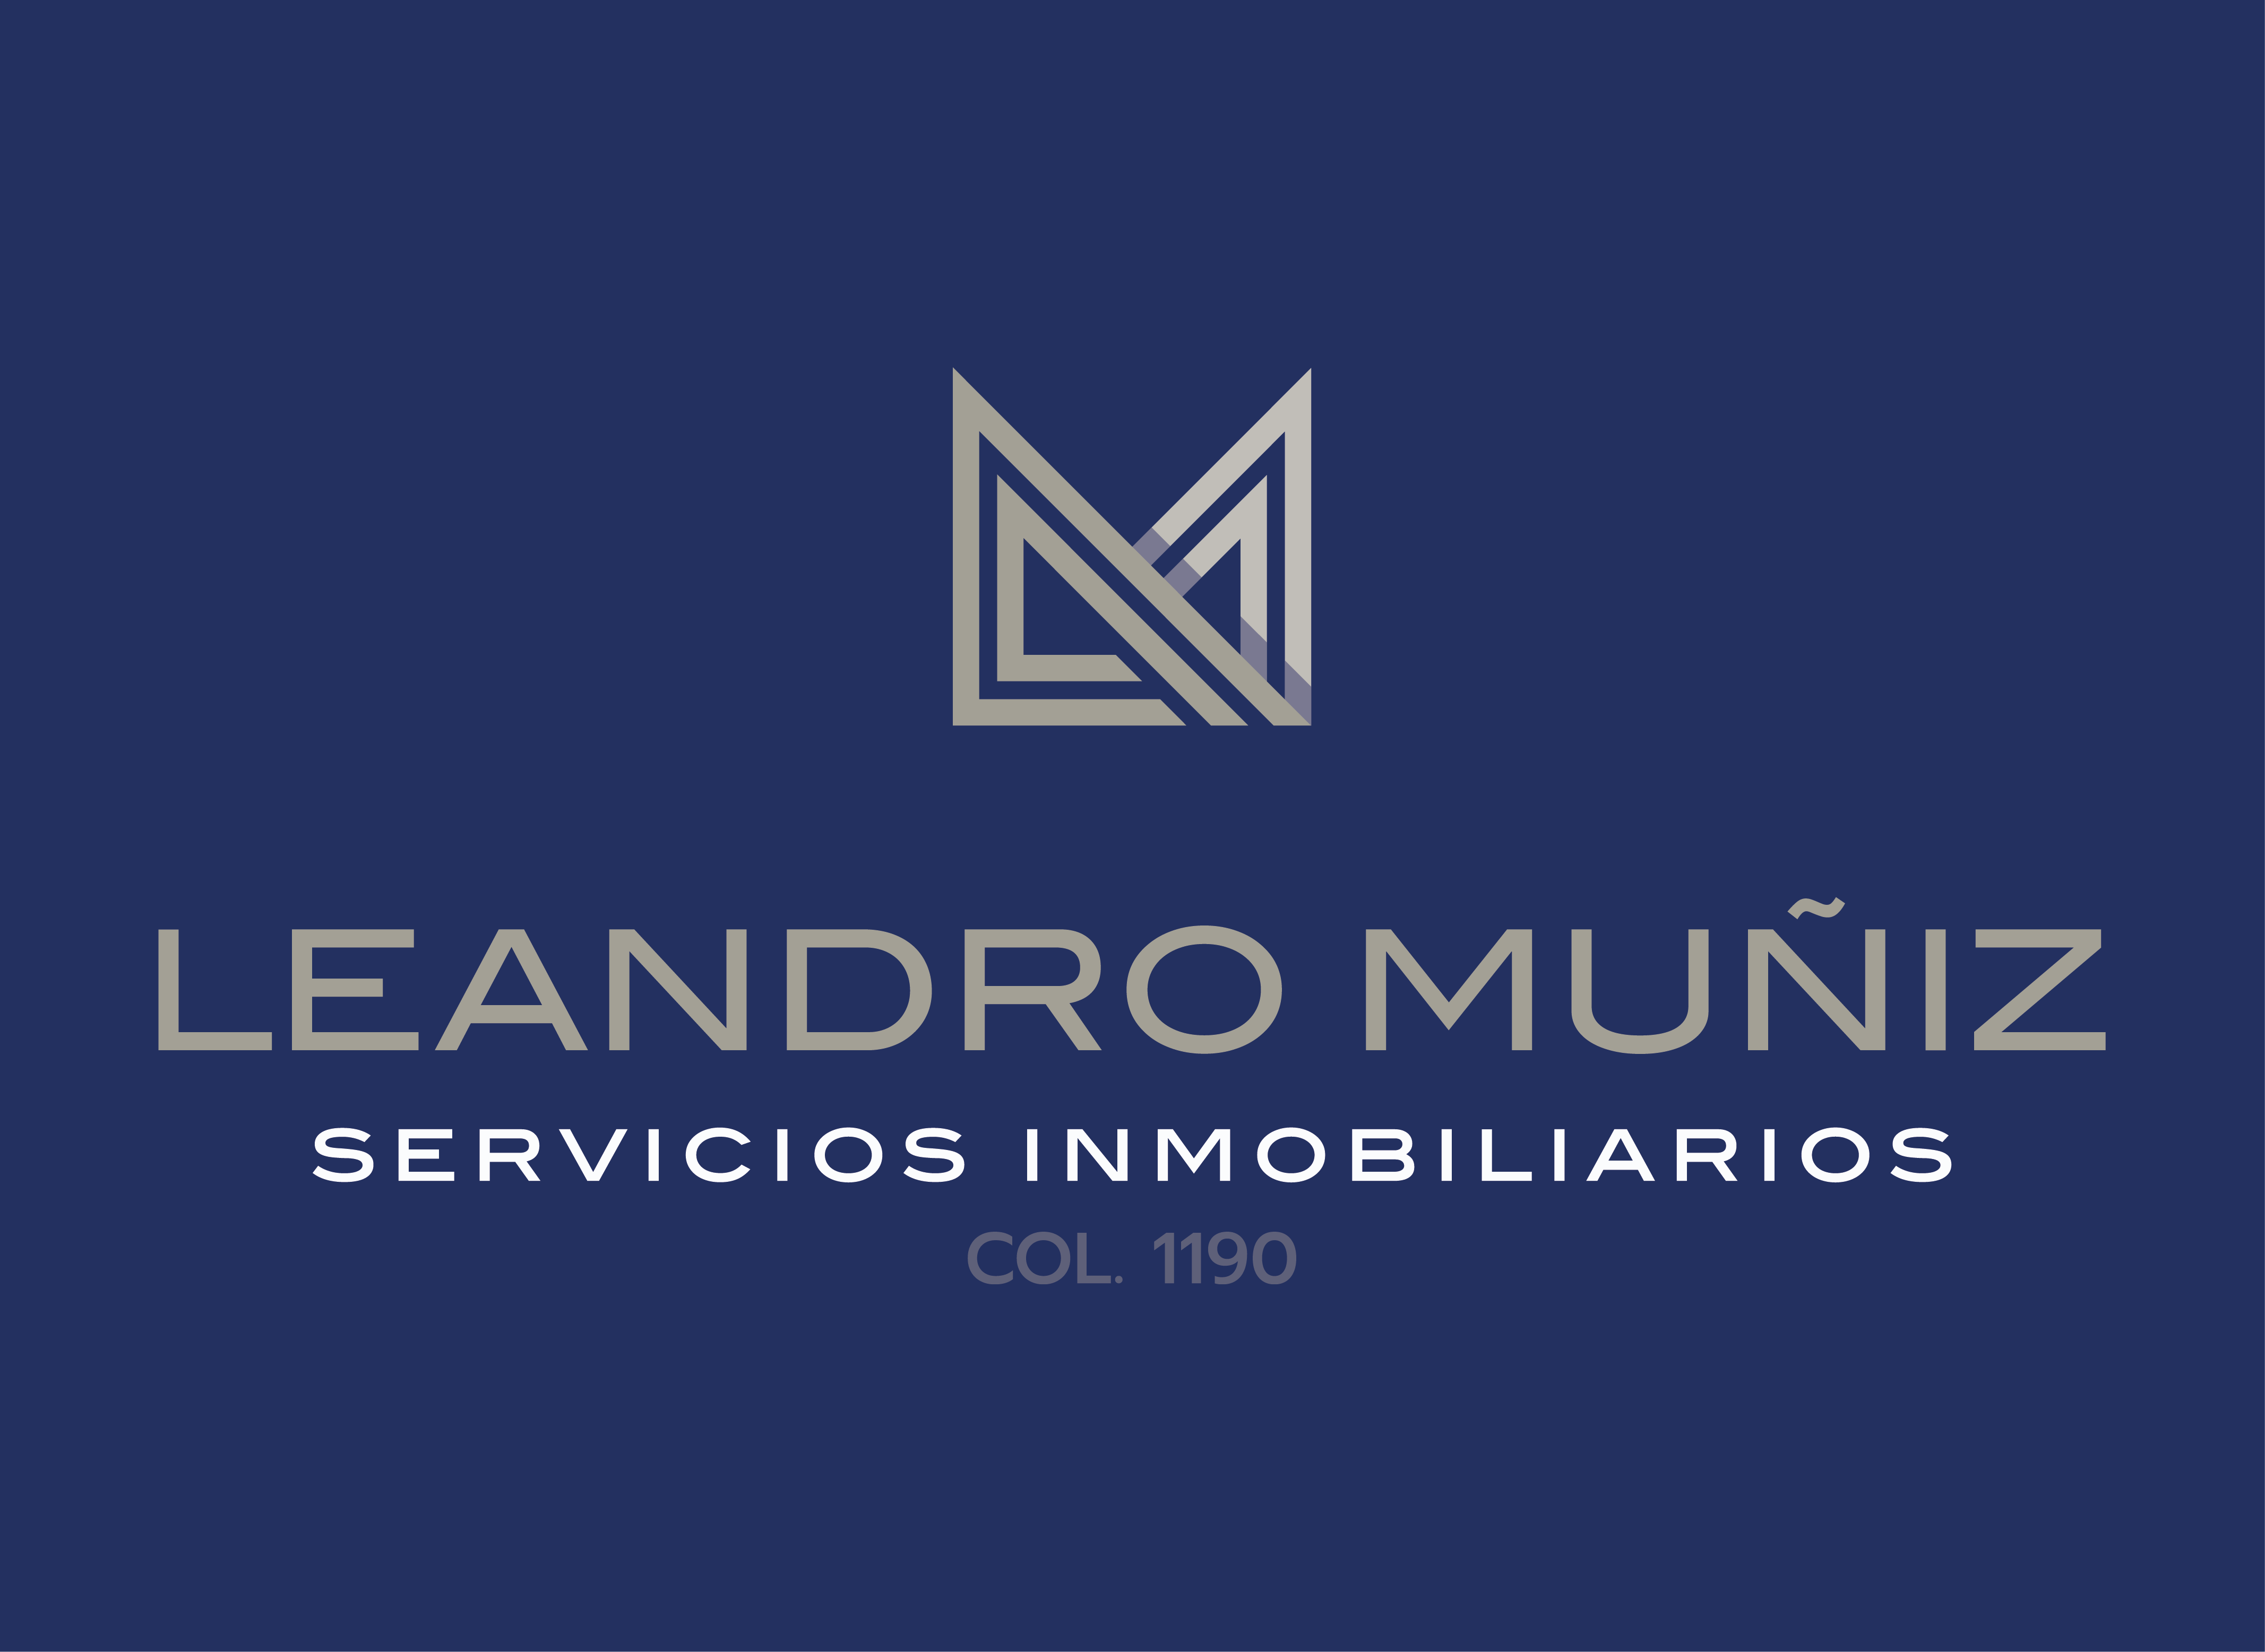 Leandro Muñiz Servicios Inmobiliarios